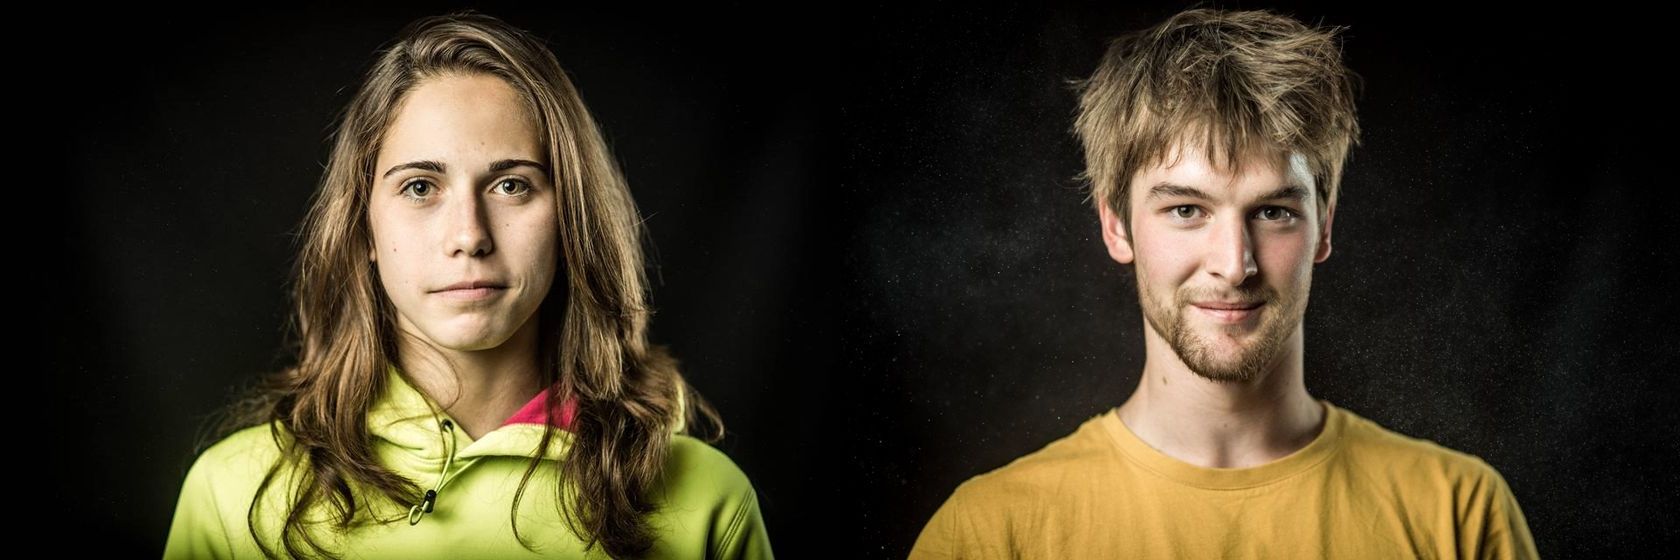  Сташа Гейо (Stasa Gejo) и Ян Хойер (Jan Hojer) - победители Чемпионата Европы по скалолазанию (боулдеринг) 2017 года